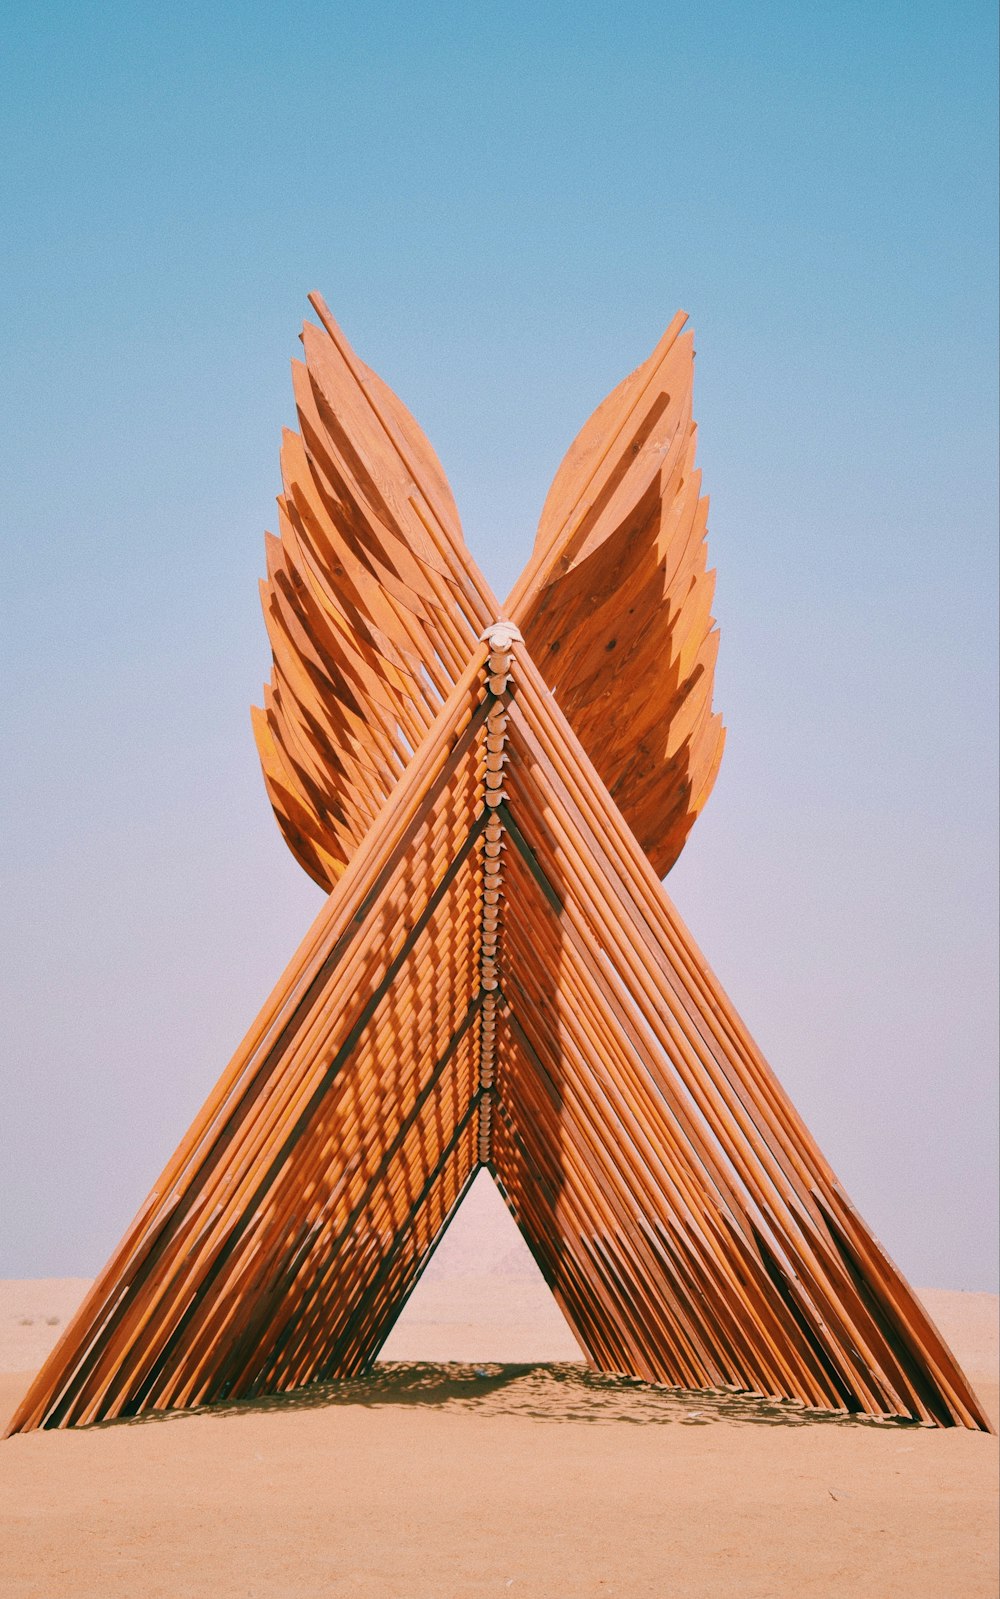 Una escultura hecha de palos de madera en el desierto